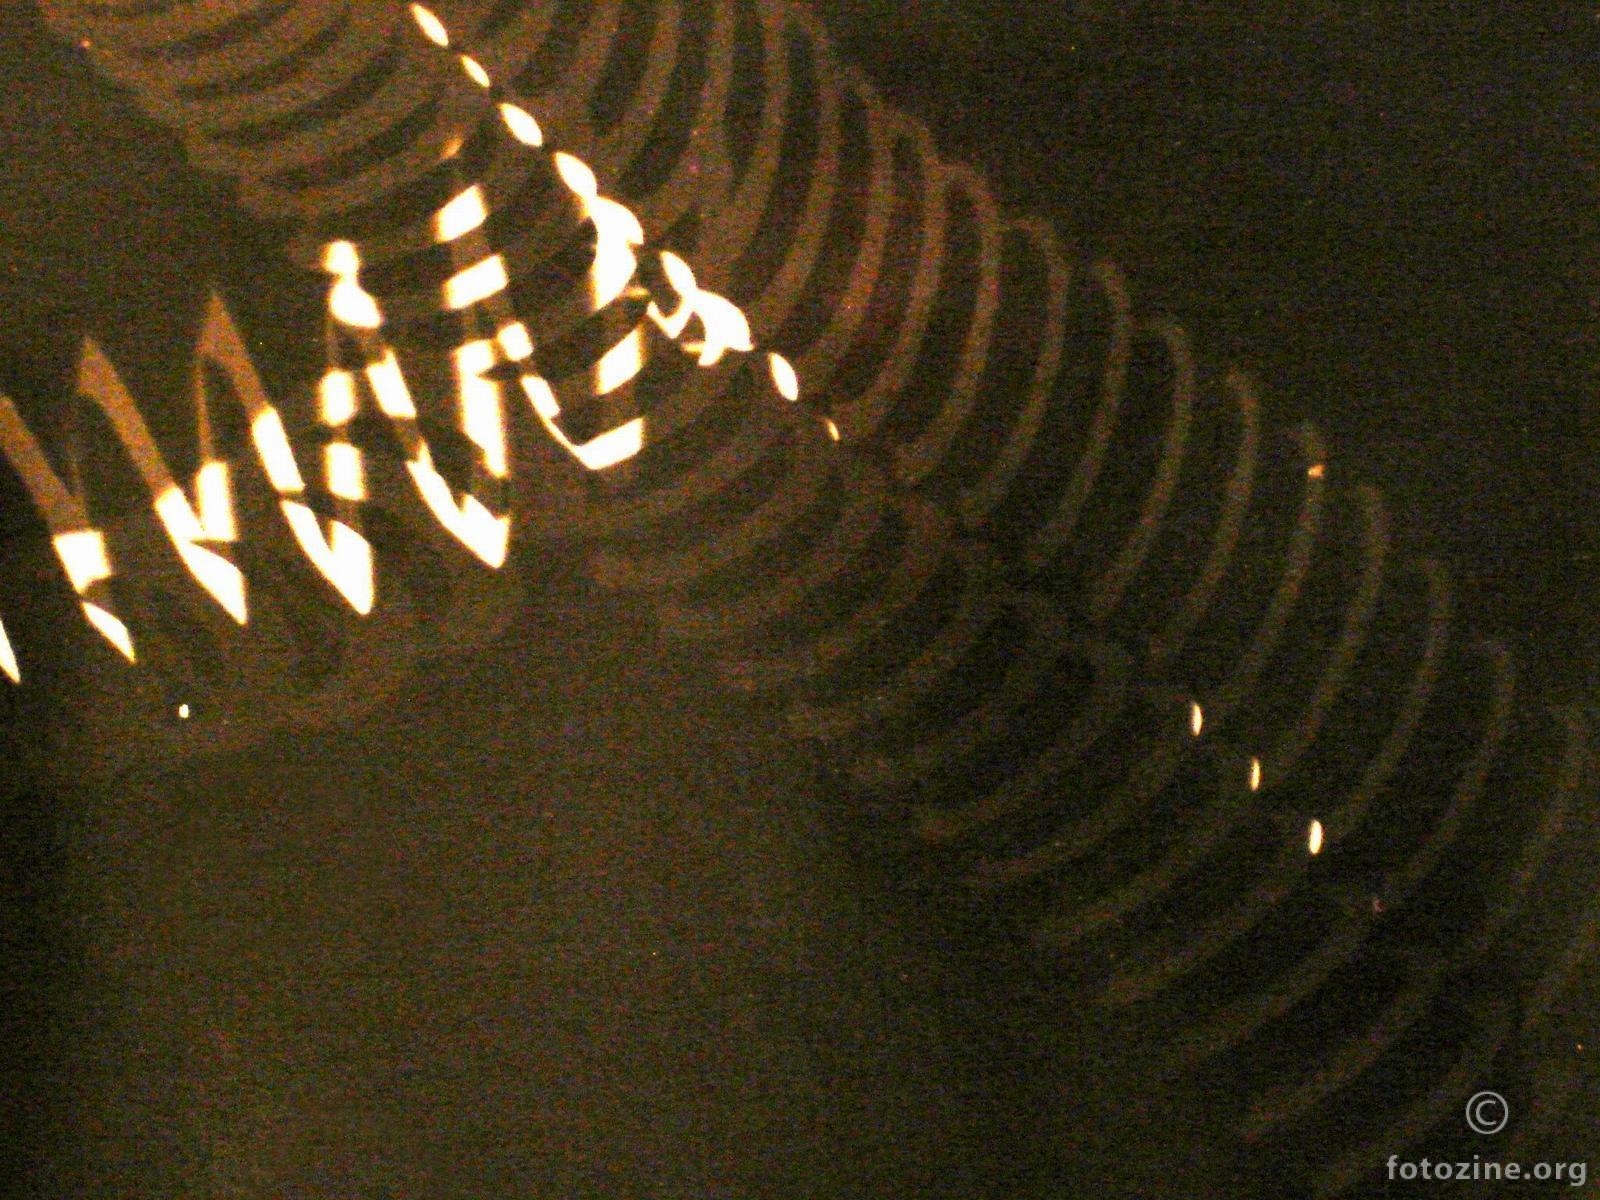 dvije spirale sa 2 blica iz 2 razna mjesta (photochemogramme)